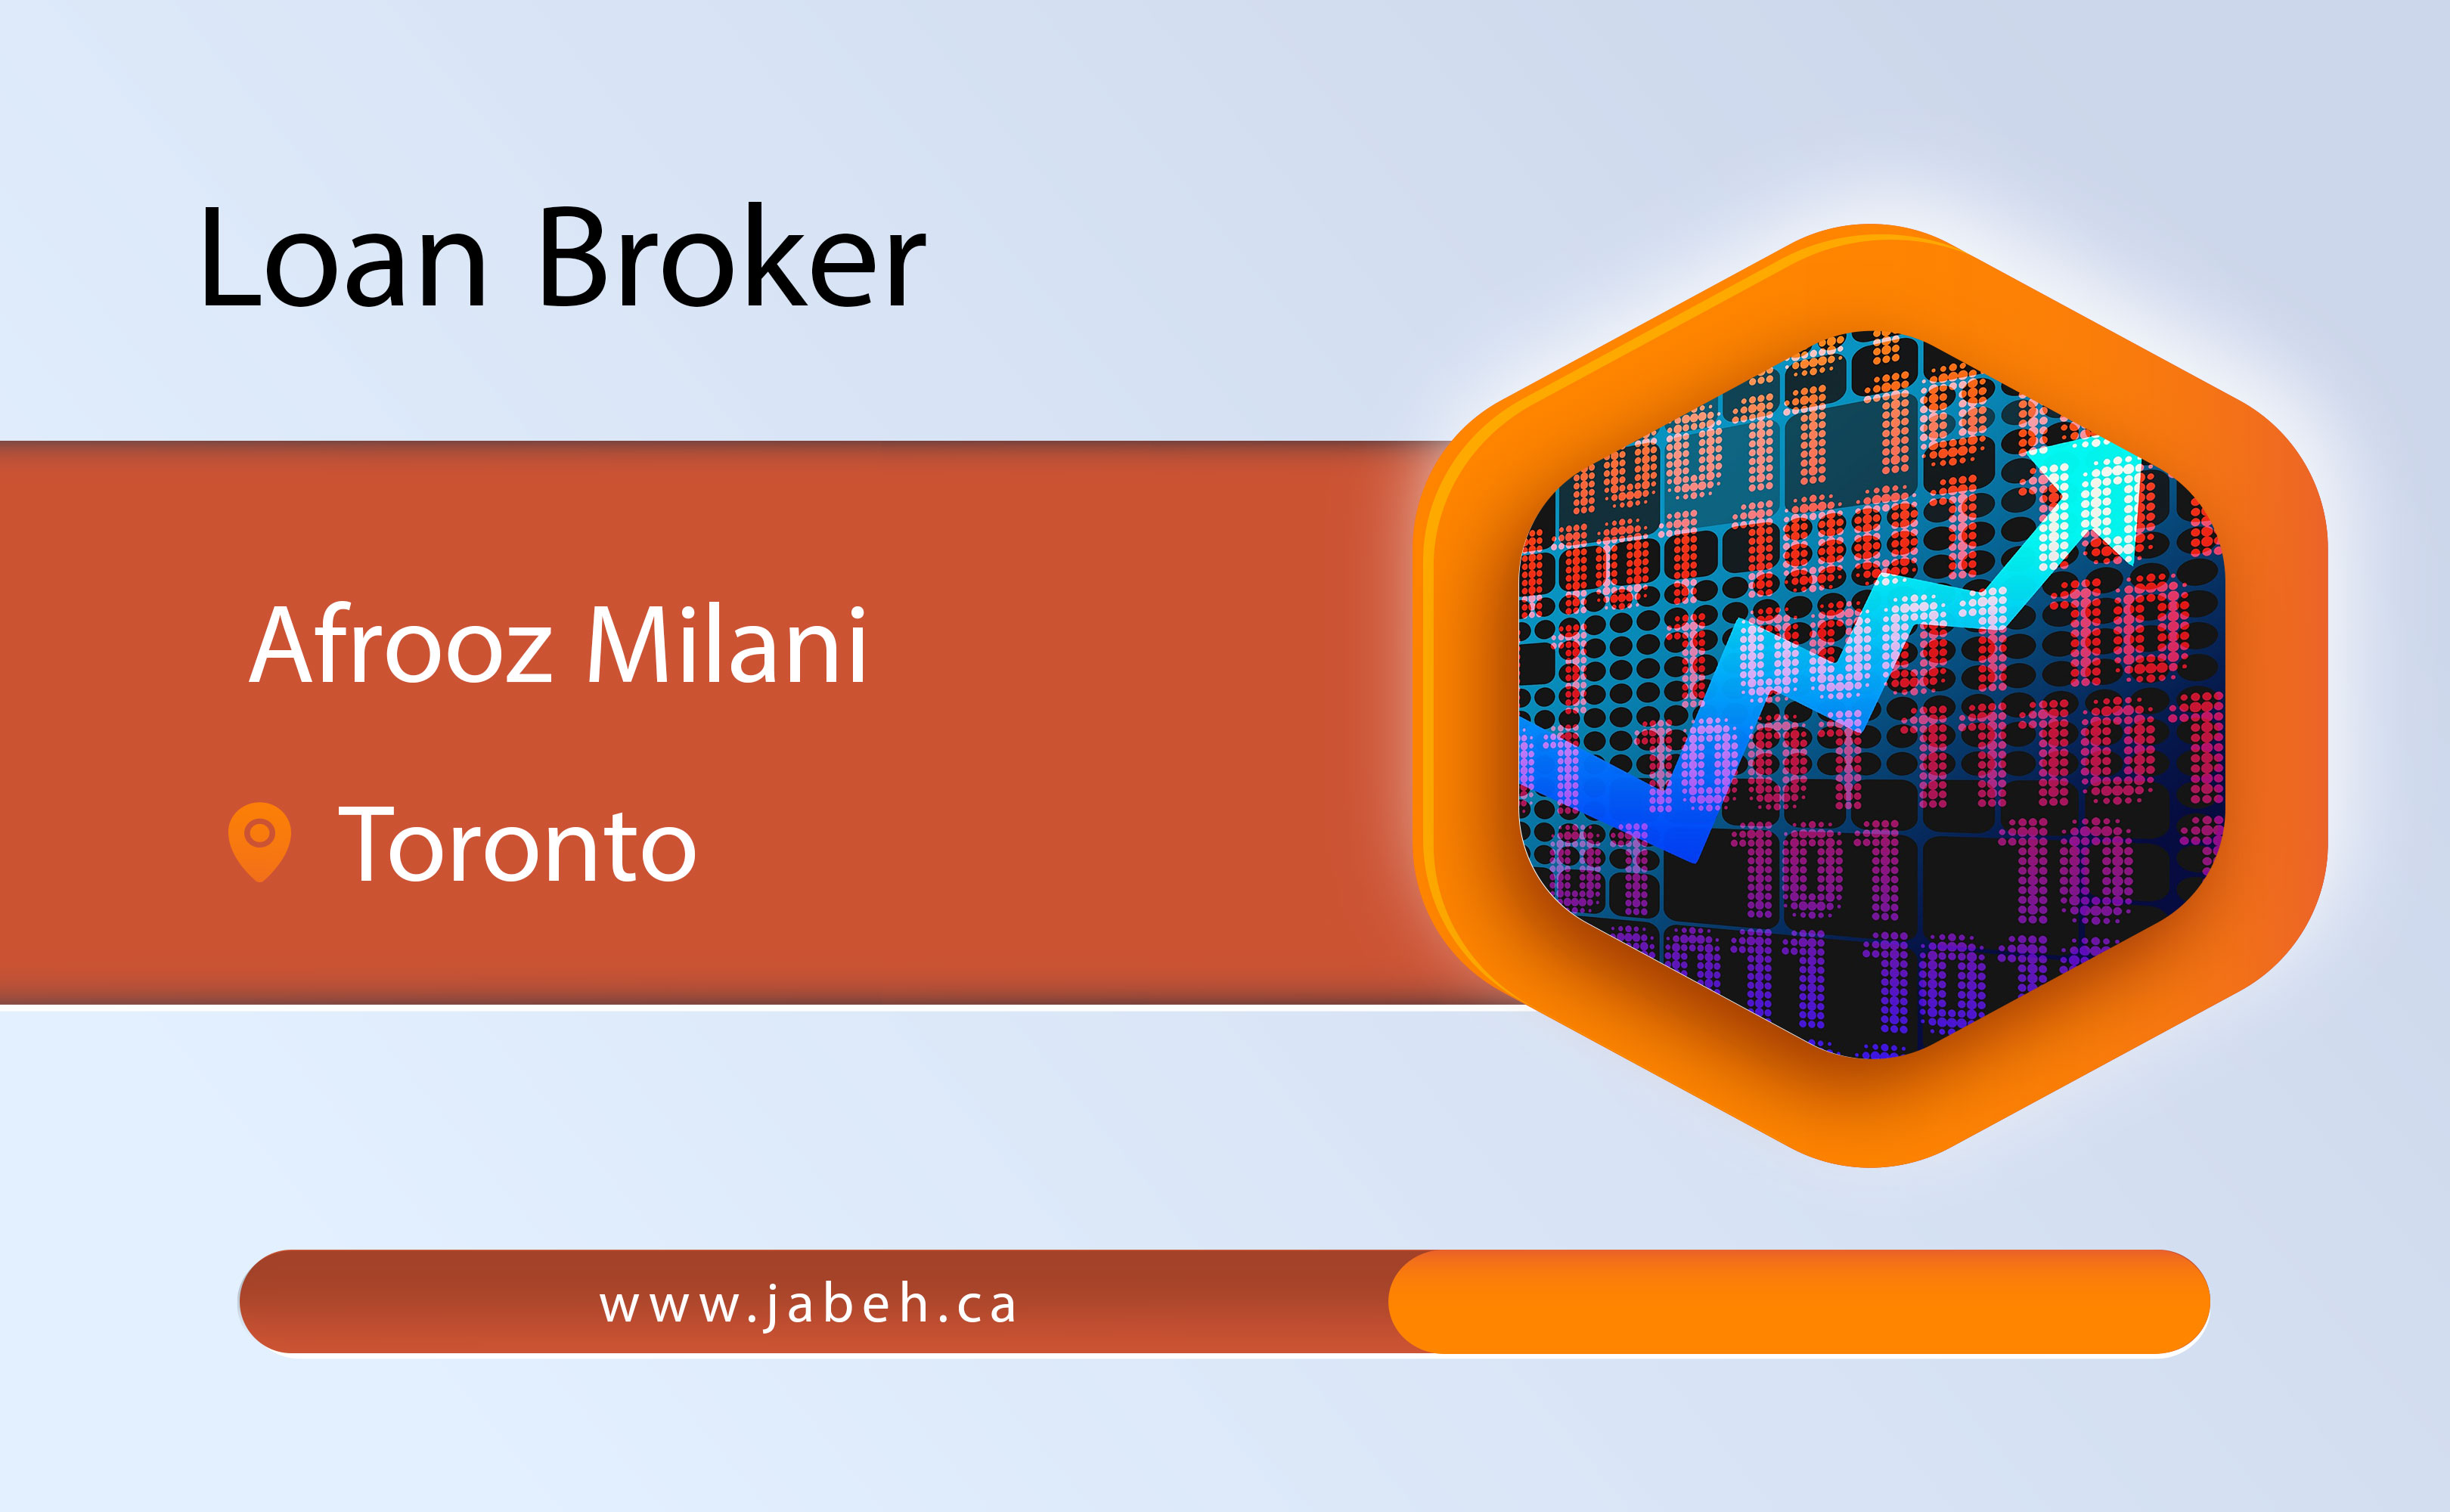 Iranian loan broker Afrooz Milani in Toronto